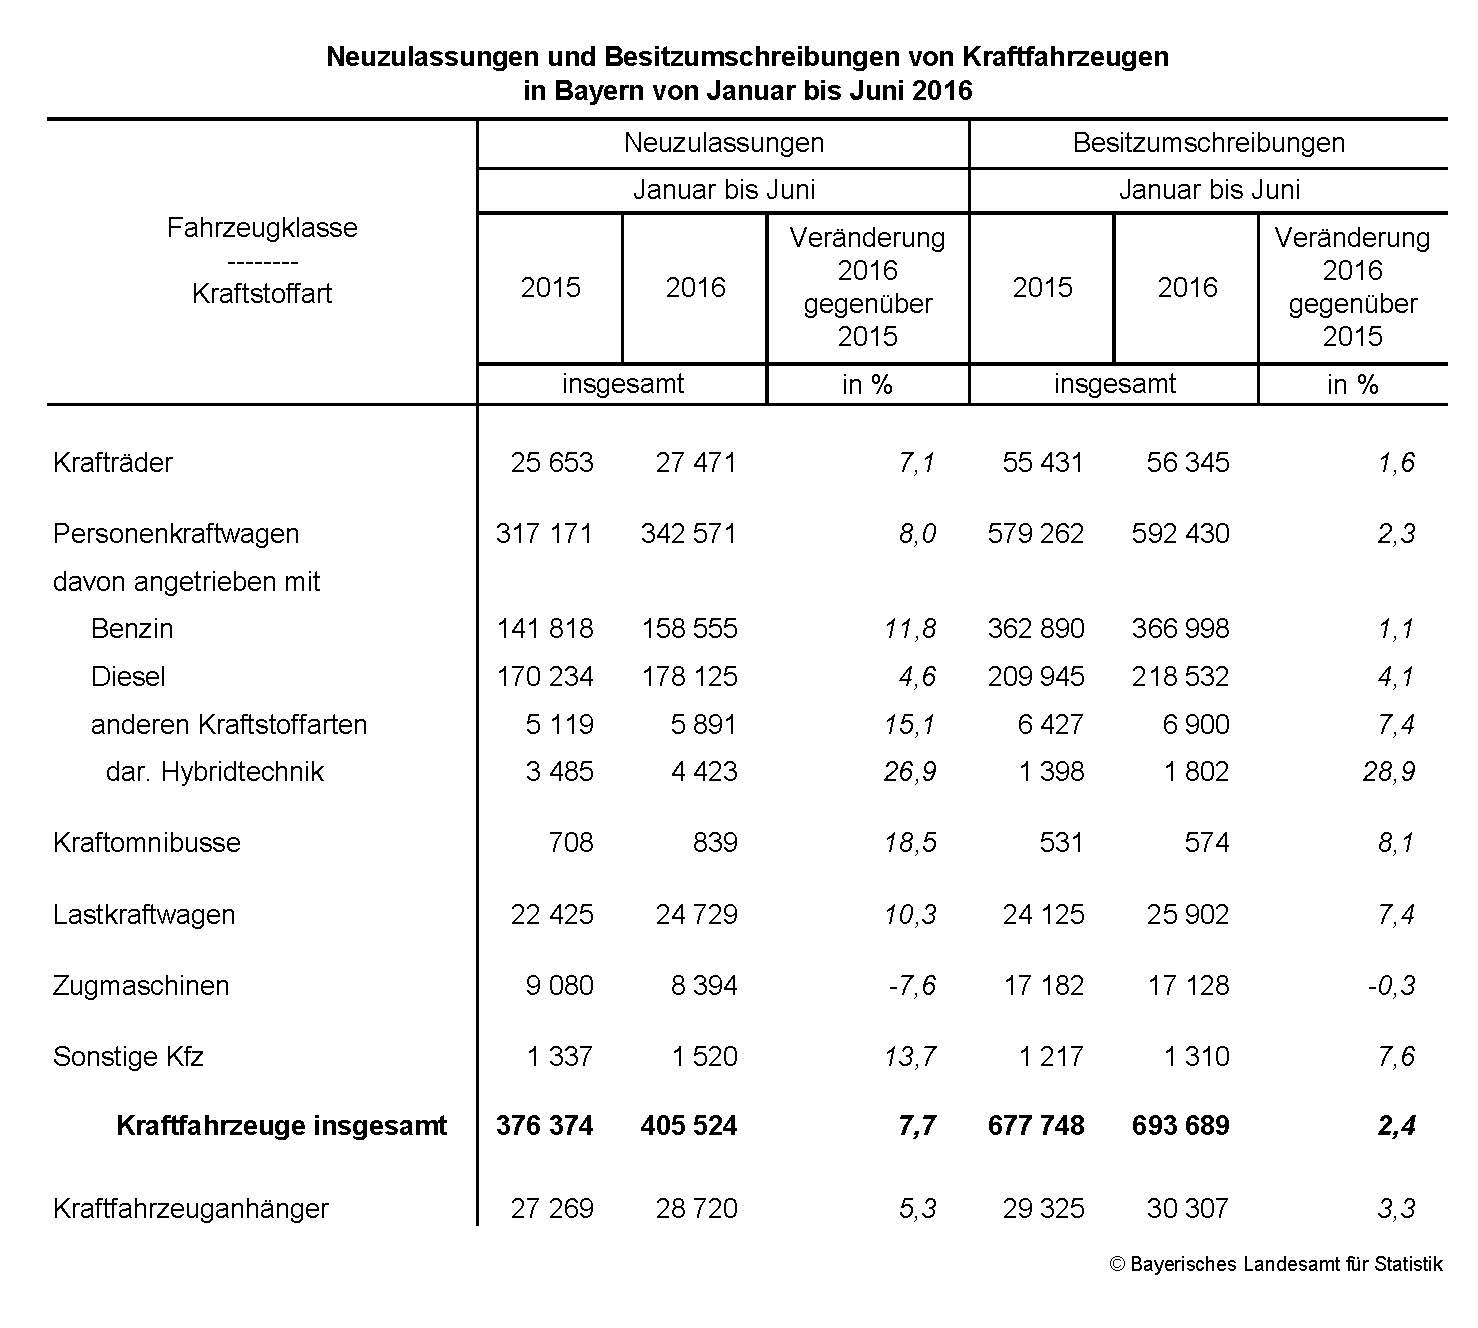 Neuzulassungen und Besitzumschreibungen von Kraftfahrzeugen in Bayern von Januar bis Juni 2016